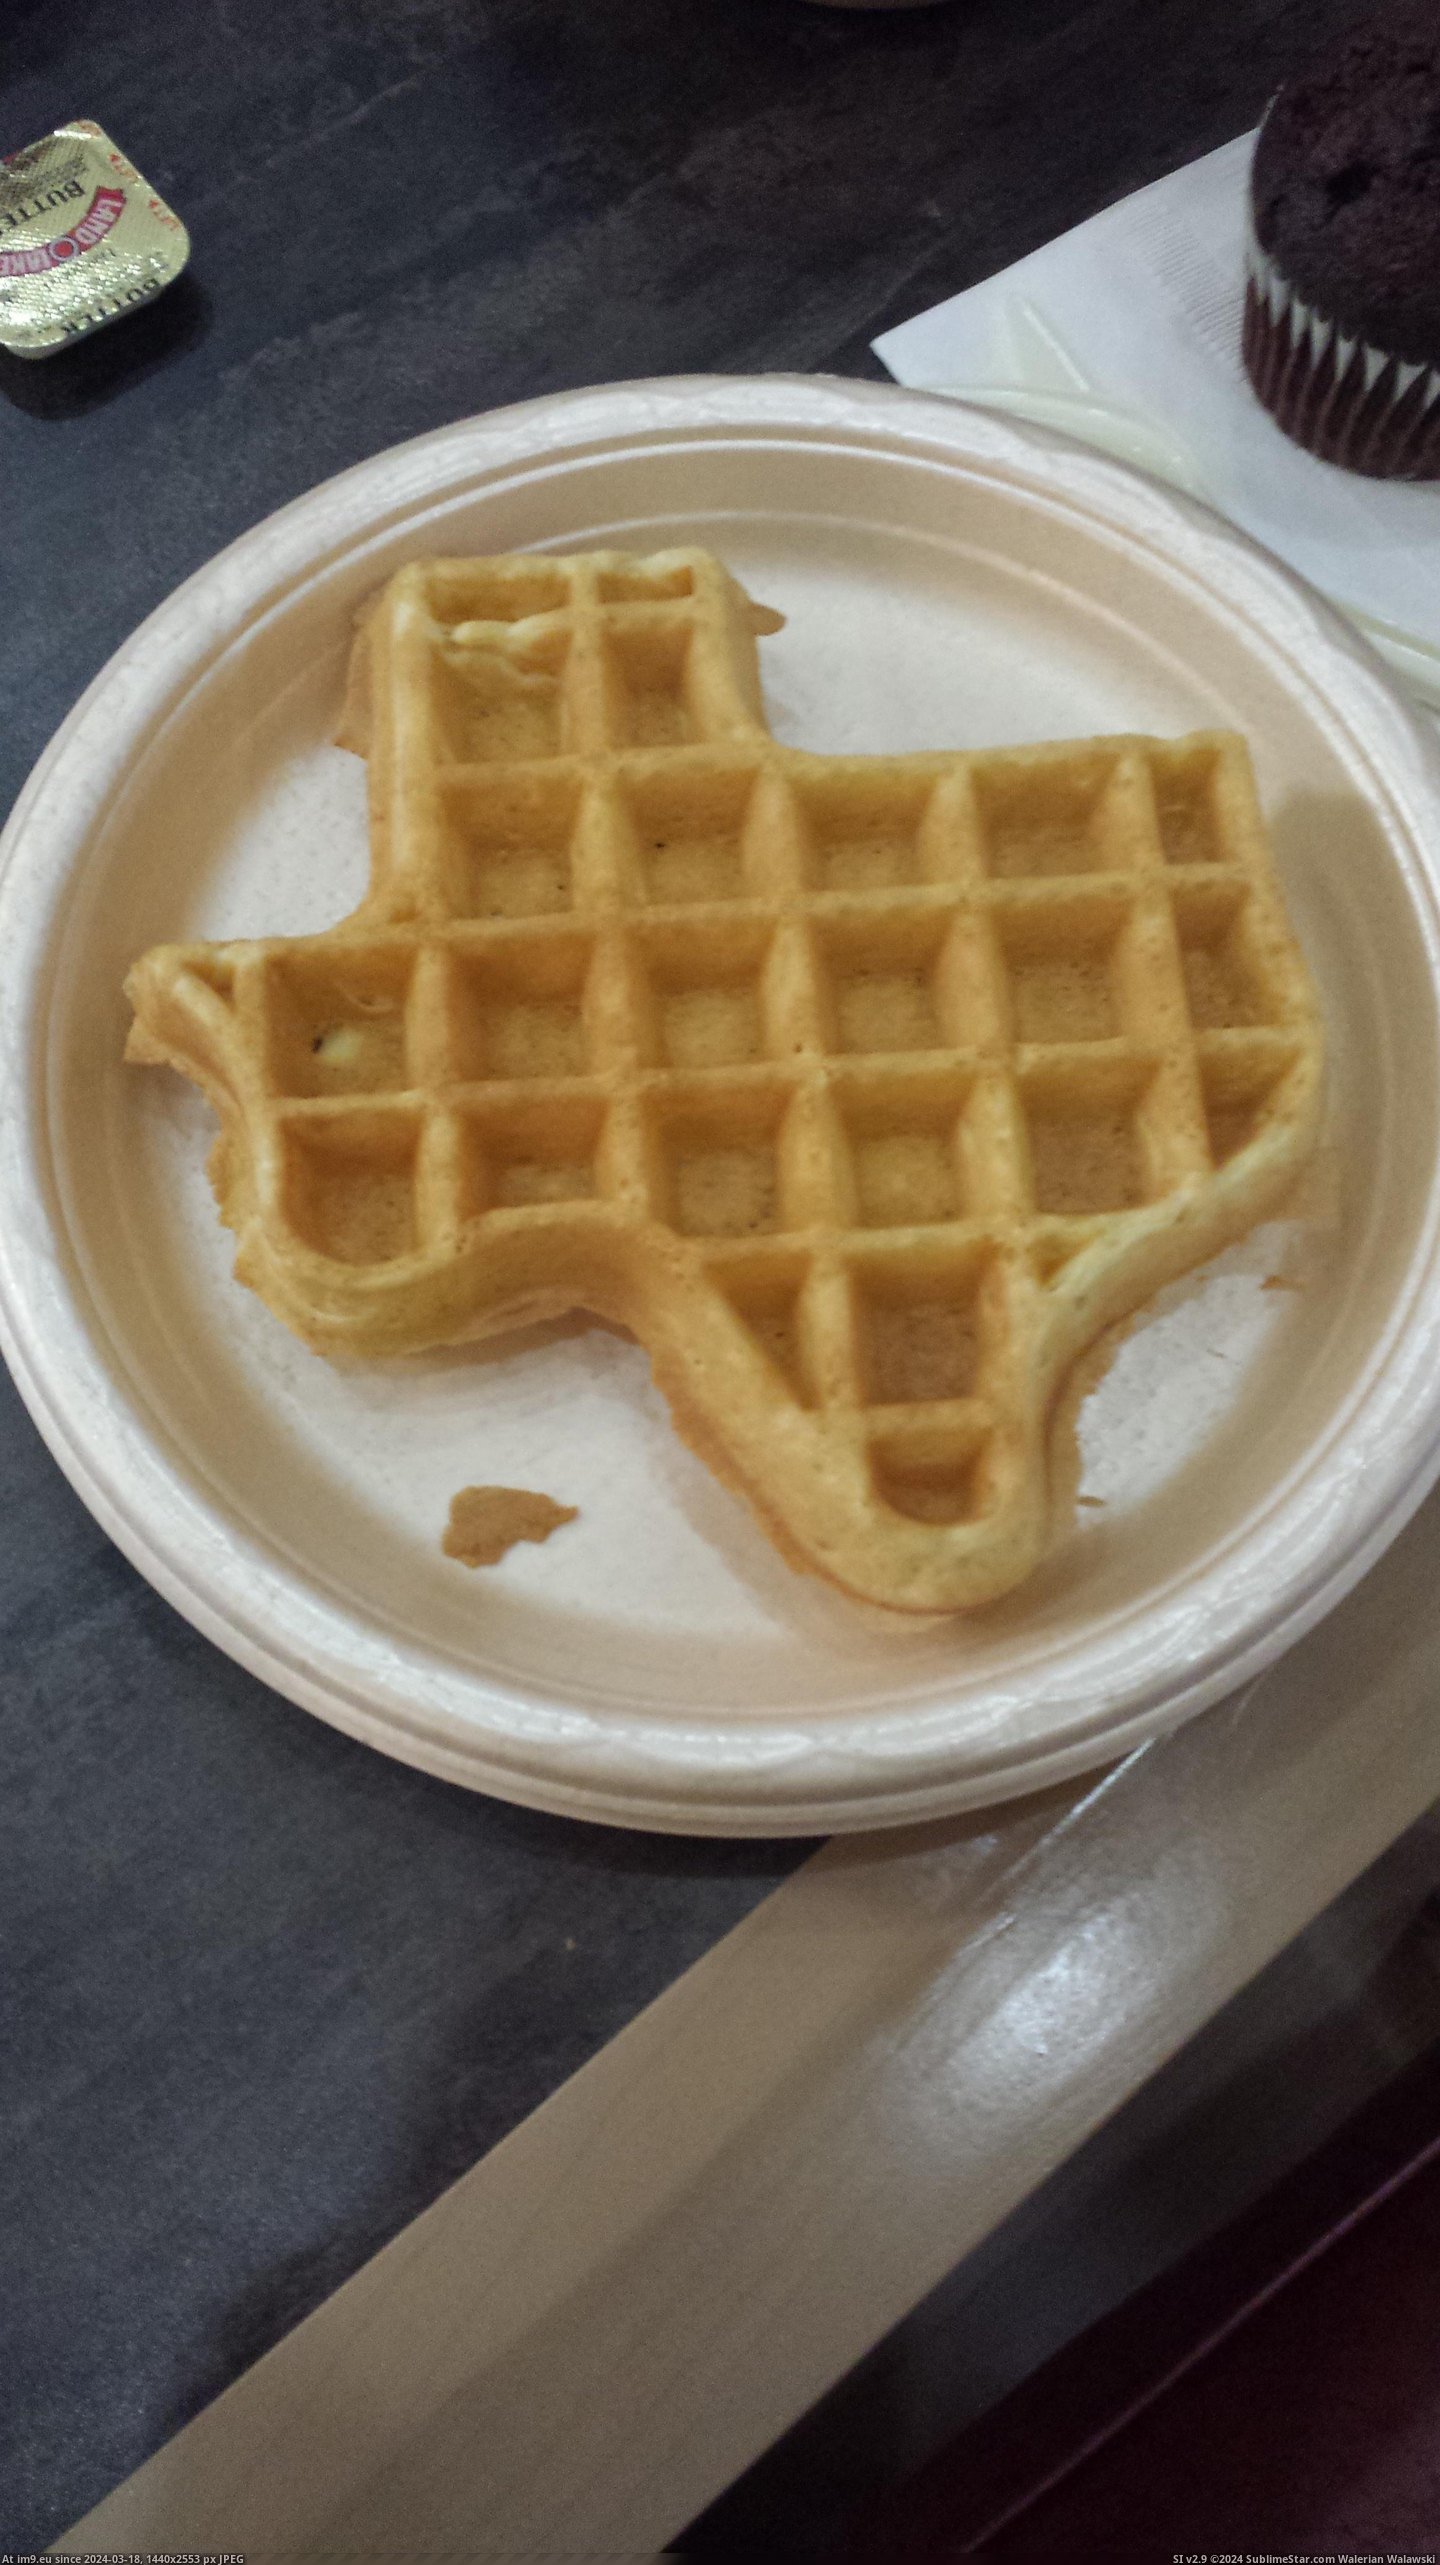 #Hotel #Texas #Staying #Kansas #Serves #Shaped #Waffles [Mildlyinteresting] The hotel I'm staying at in Kansas serves waffles shaped like Texas Pic. (Bild von album My r/MILDLYINTERESTING favs))